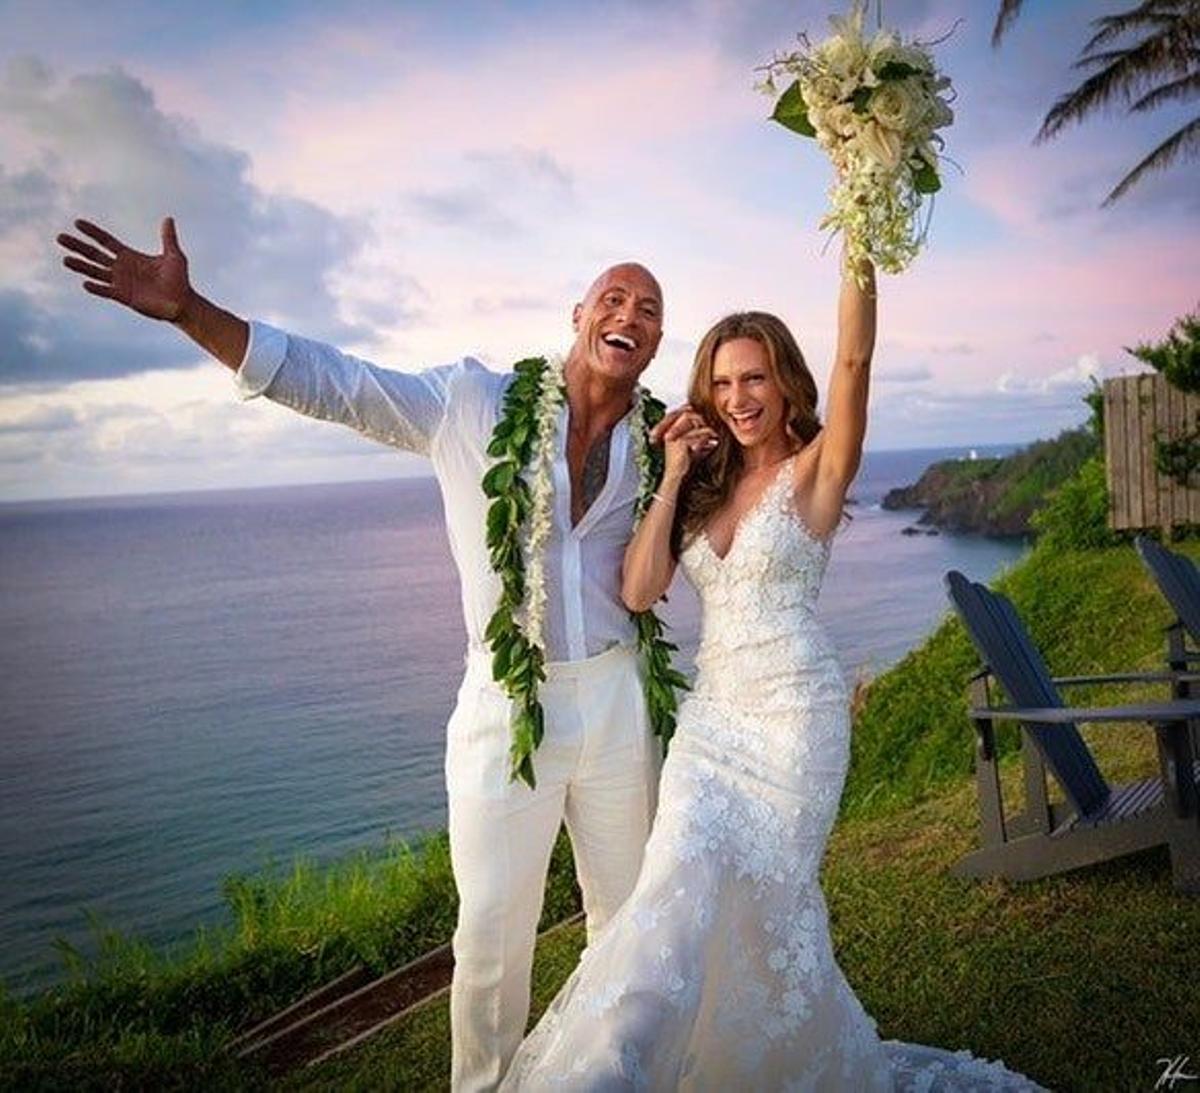 El actor The Rock y su esposa Lauren Hashian el día de su boda